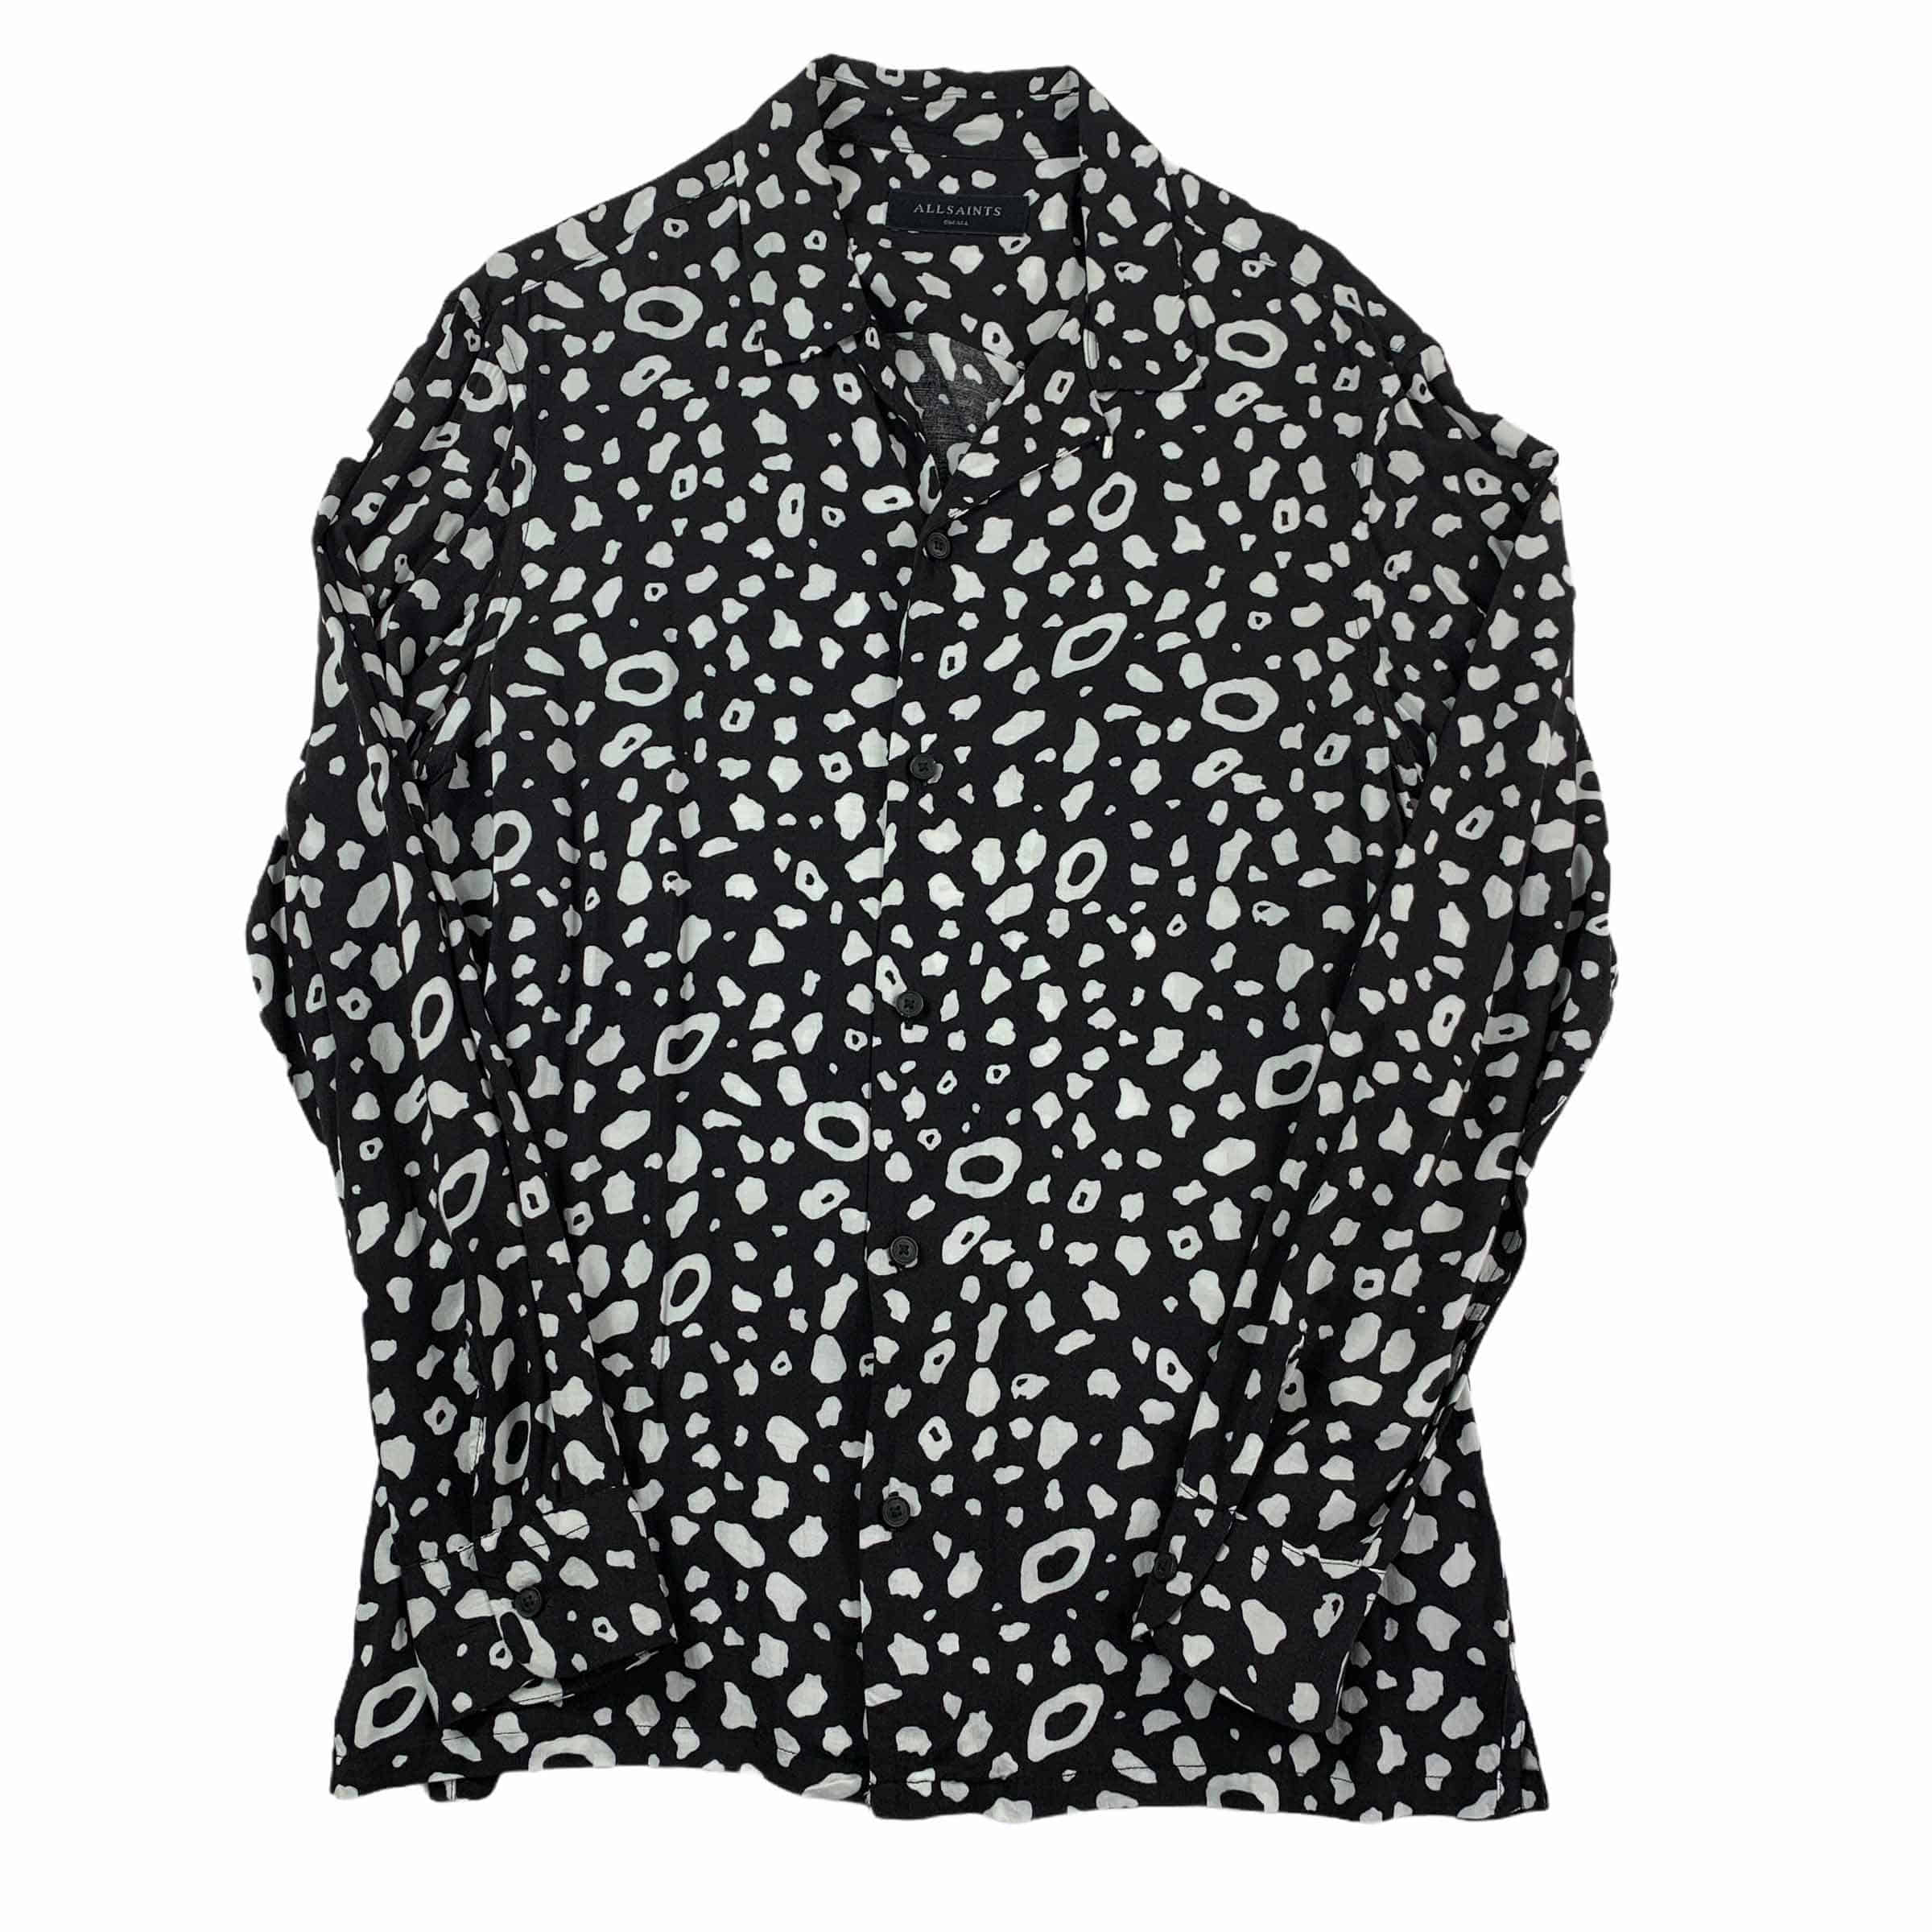 [All Saints] Leopard Shirt BK - Size S